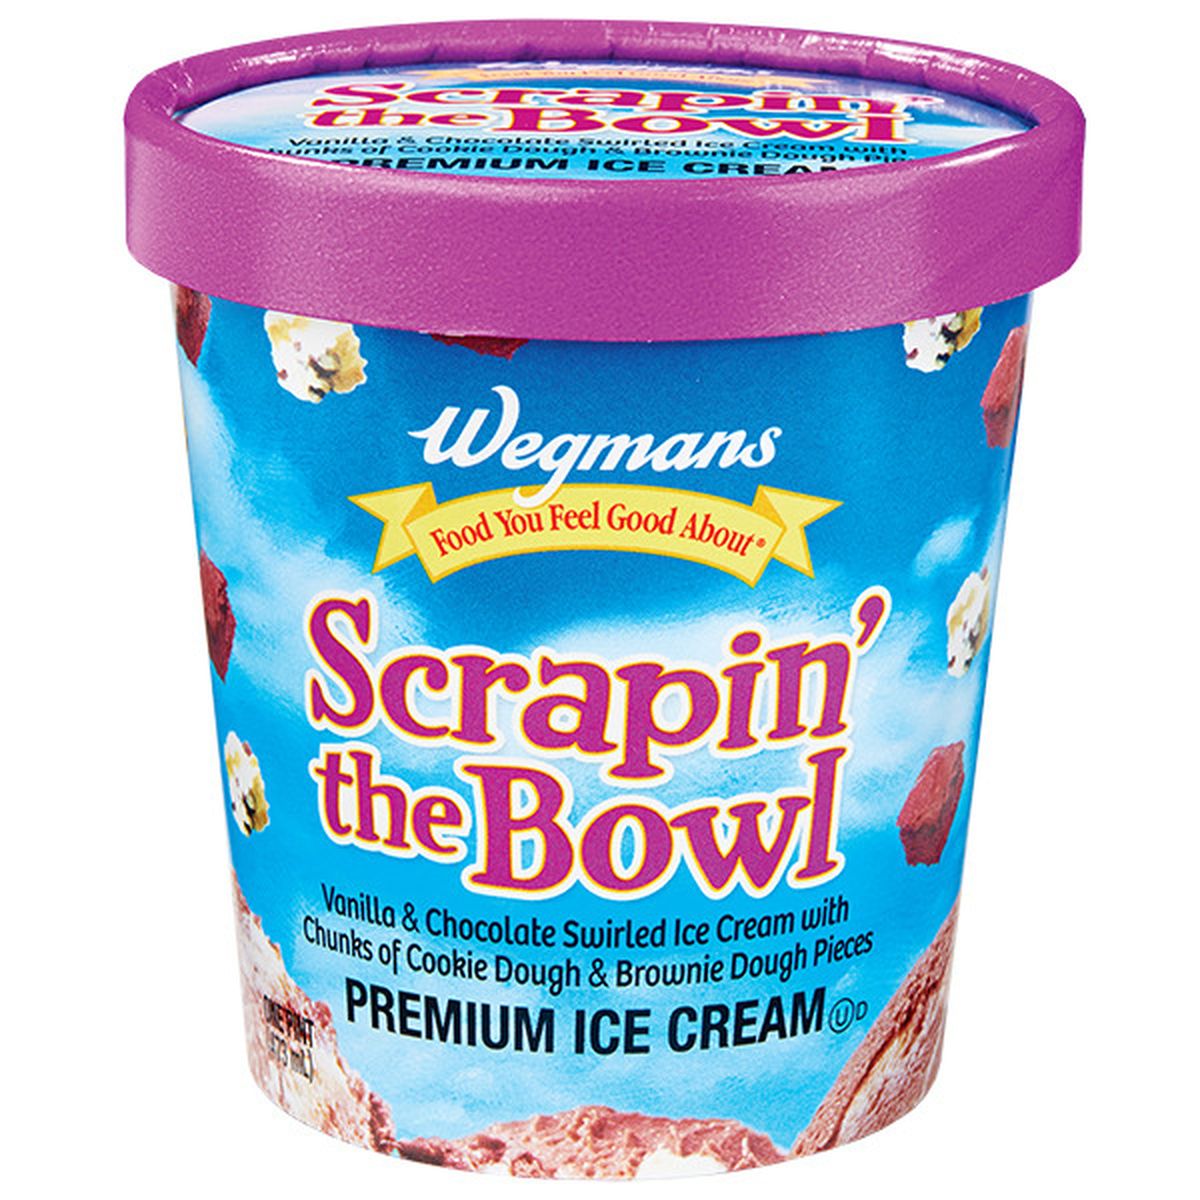 Calories in Wegmans Scrapin' the Bowl Premium Ice Cream